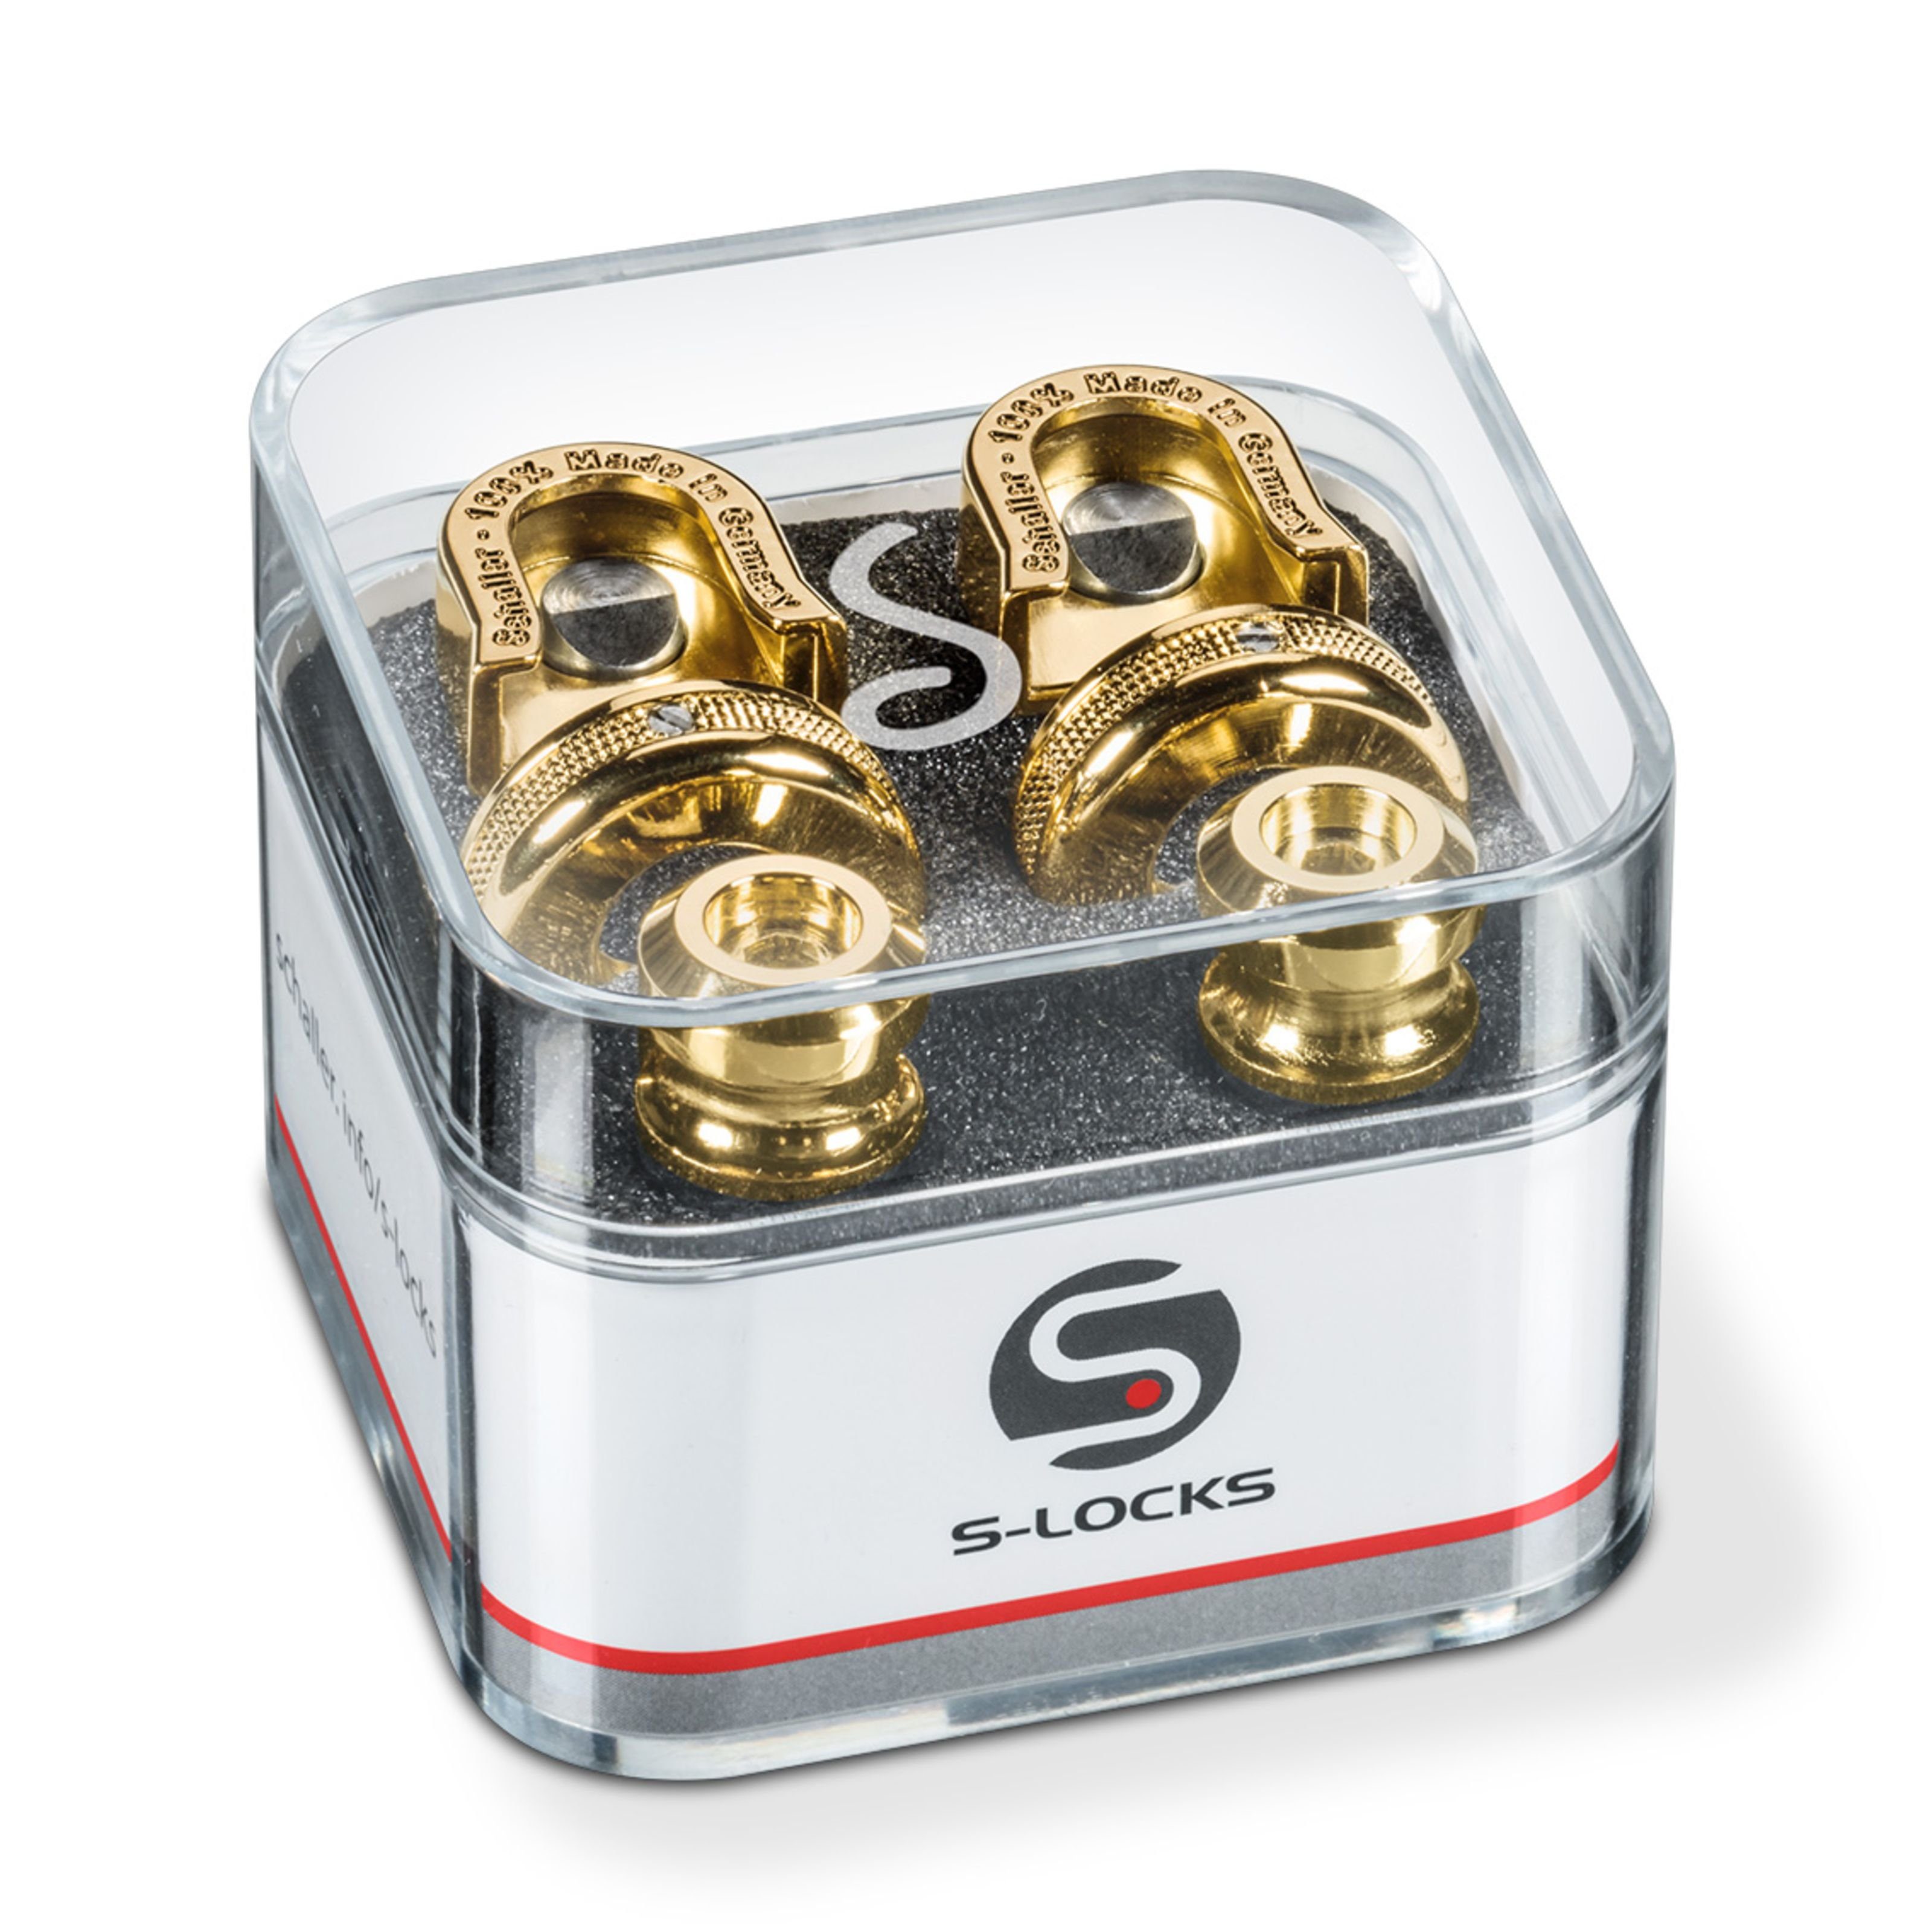 Schaller Plektrum, S-Locks Gold